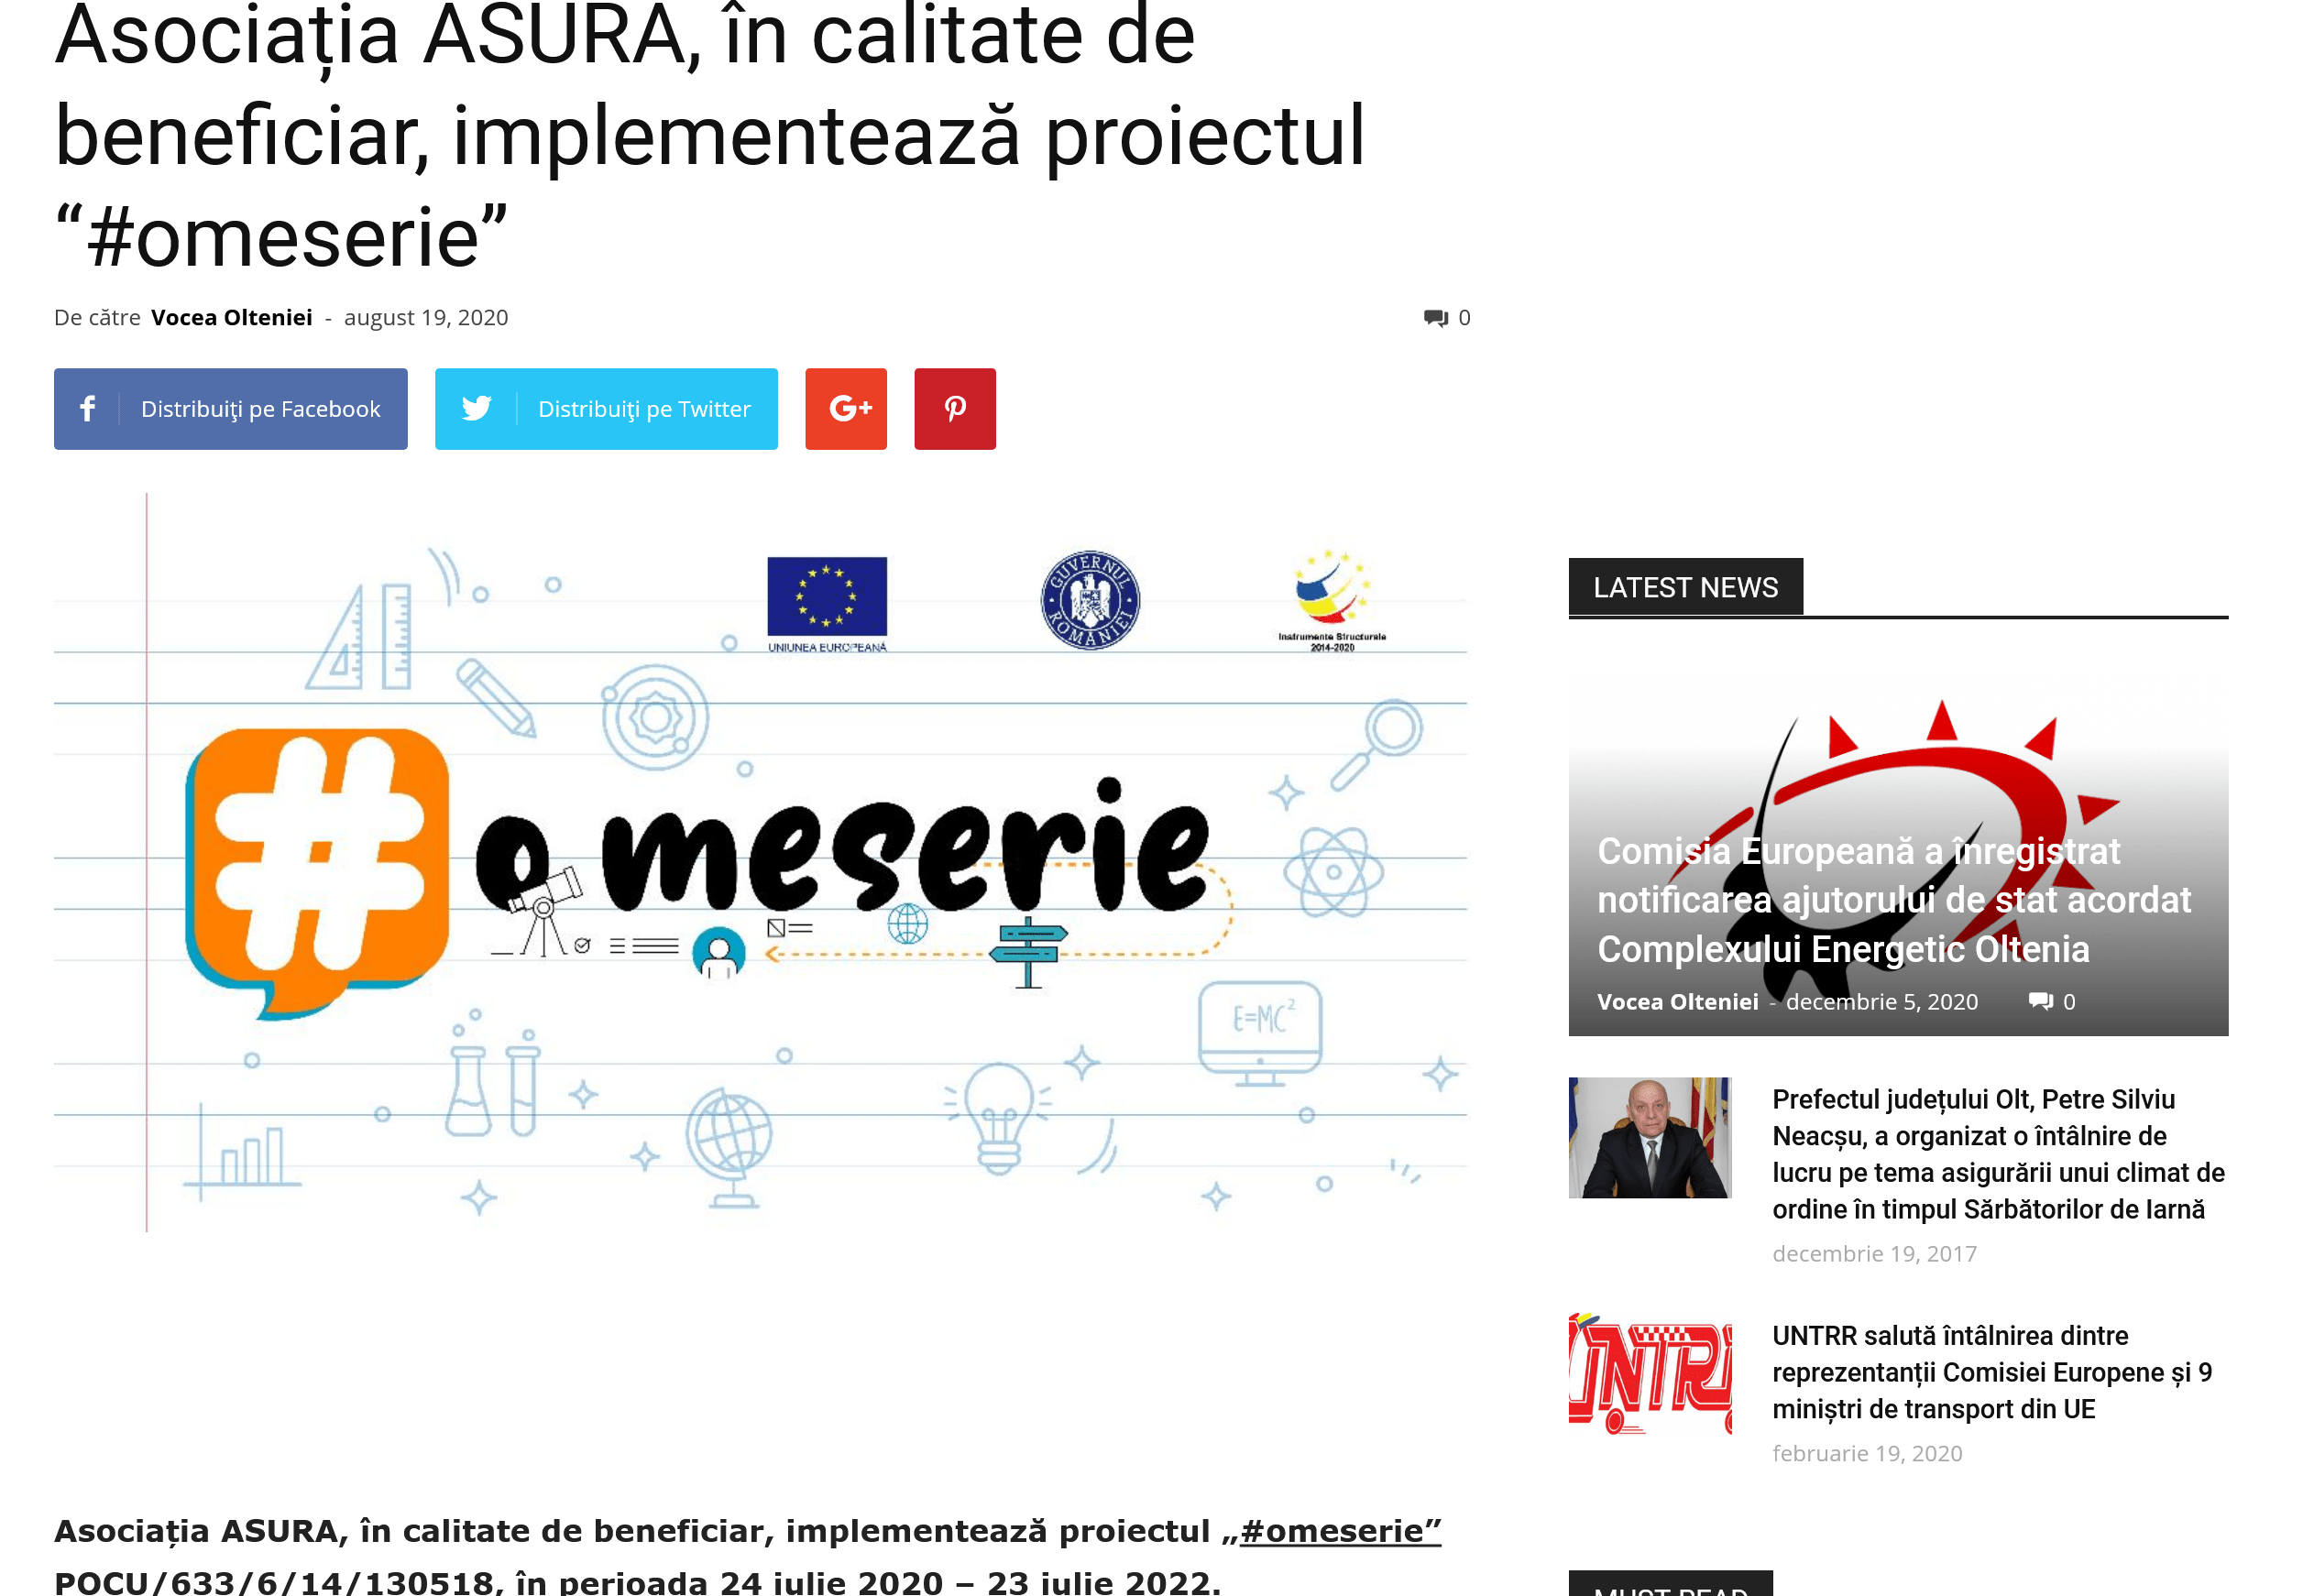 Asociația ASURA, în calitate de beneficiar, implementează proiectul “#omeserie”